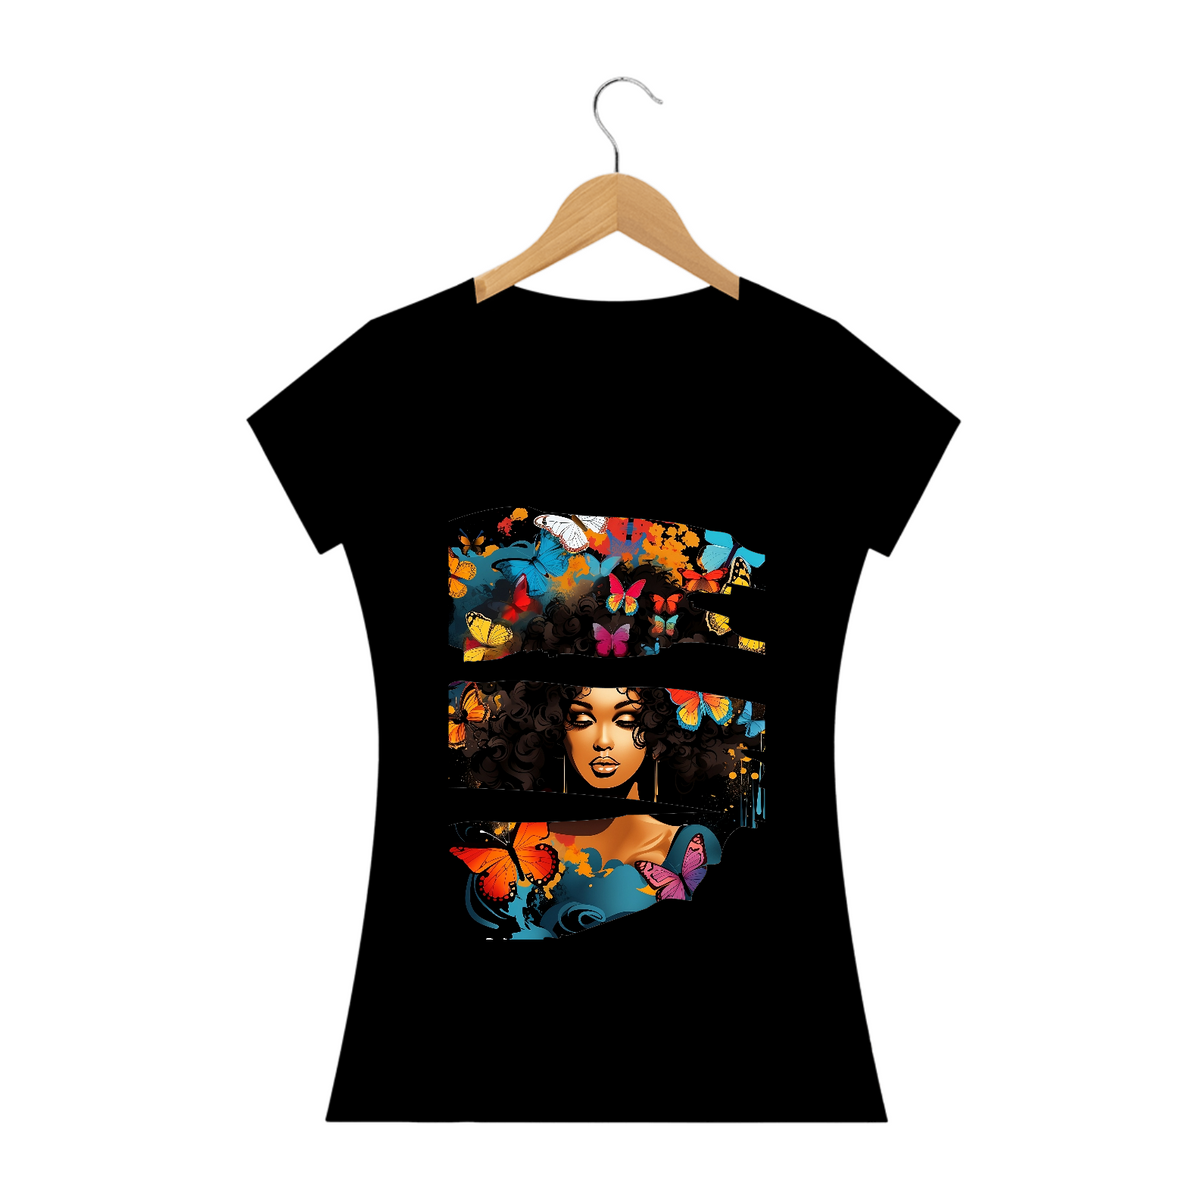 Nome do produto: Camiseta Feminina Mulher Afro com Borboletas: Uma Fusão de Estilos Artísticos